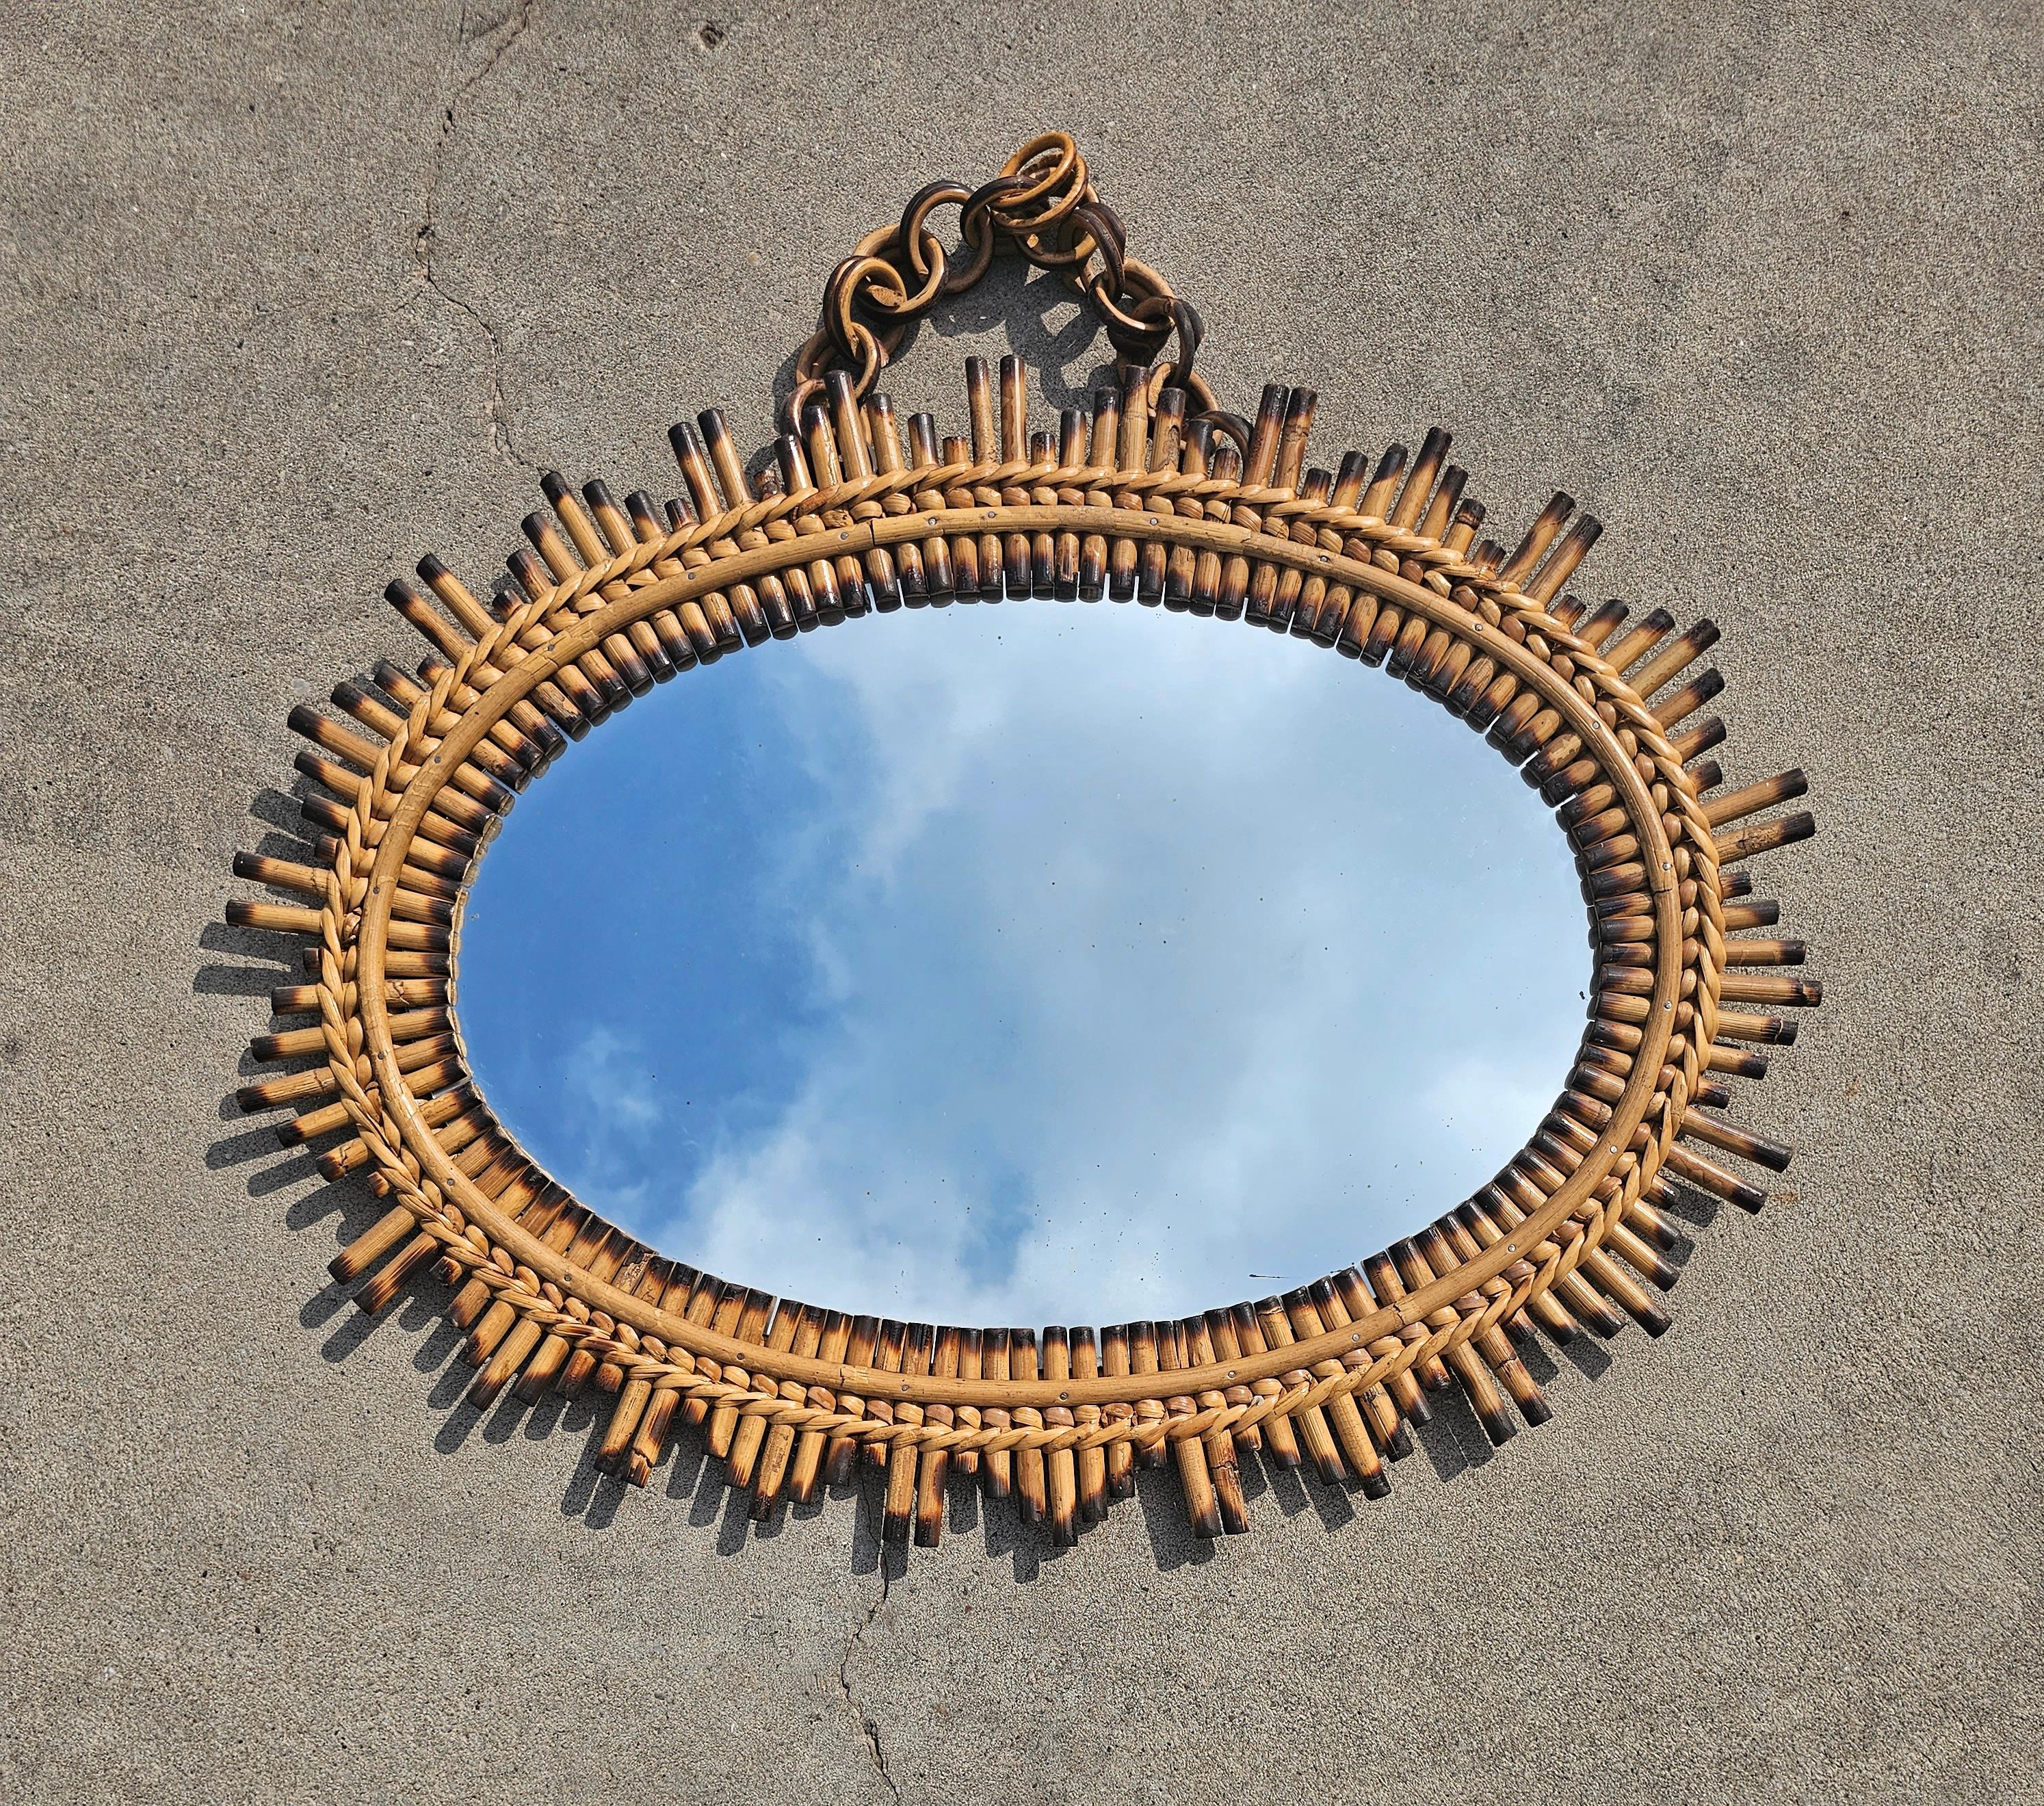 In diesem Angebot finden Sie einen einzigartigen ovalen Mid Century Modern Sunburst-Spiegel. Der Rahmen des Spiegels ist aus Bambus gefertigt, mit gebrannten Spitzen, die ihm ein markantes Aussehen verleihen. Der Spiegel ist an der Wand befestigt,